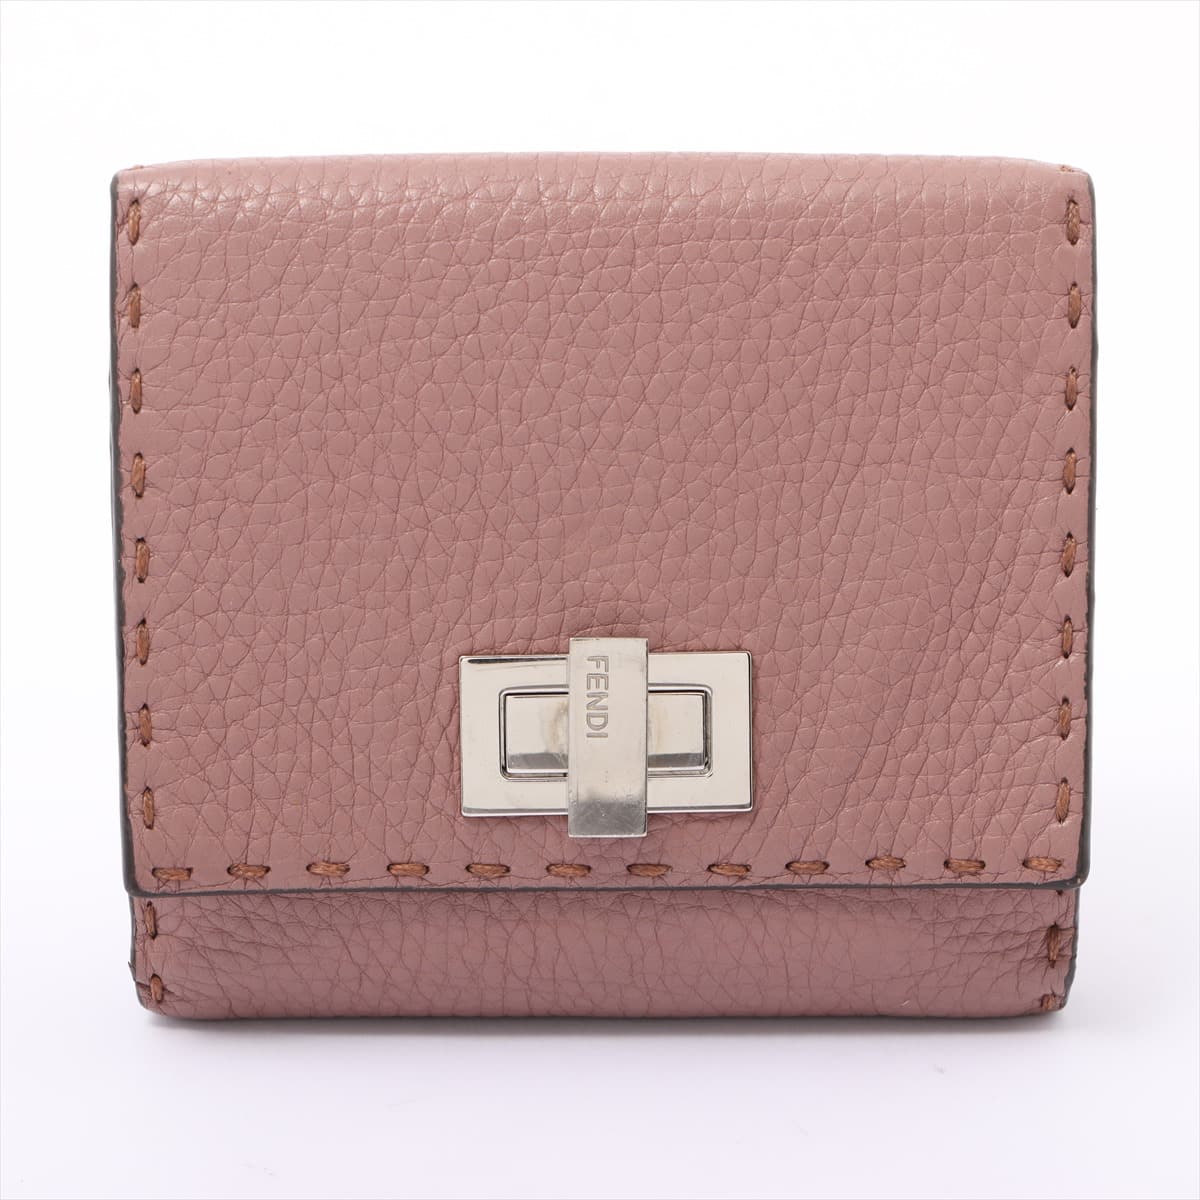 Fendi Peek-a-boo Selleria Leather Wallet Pink beige